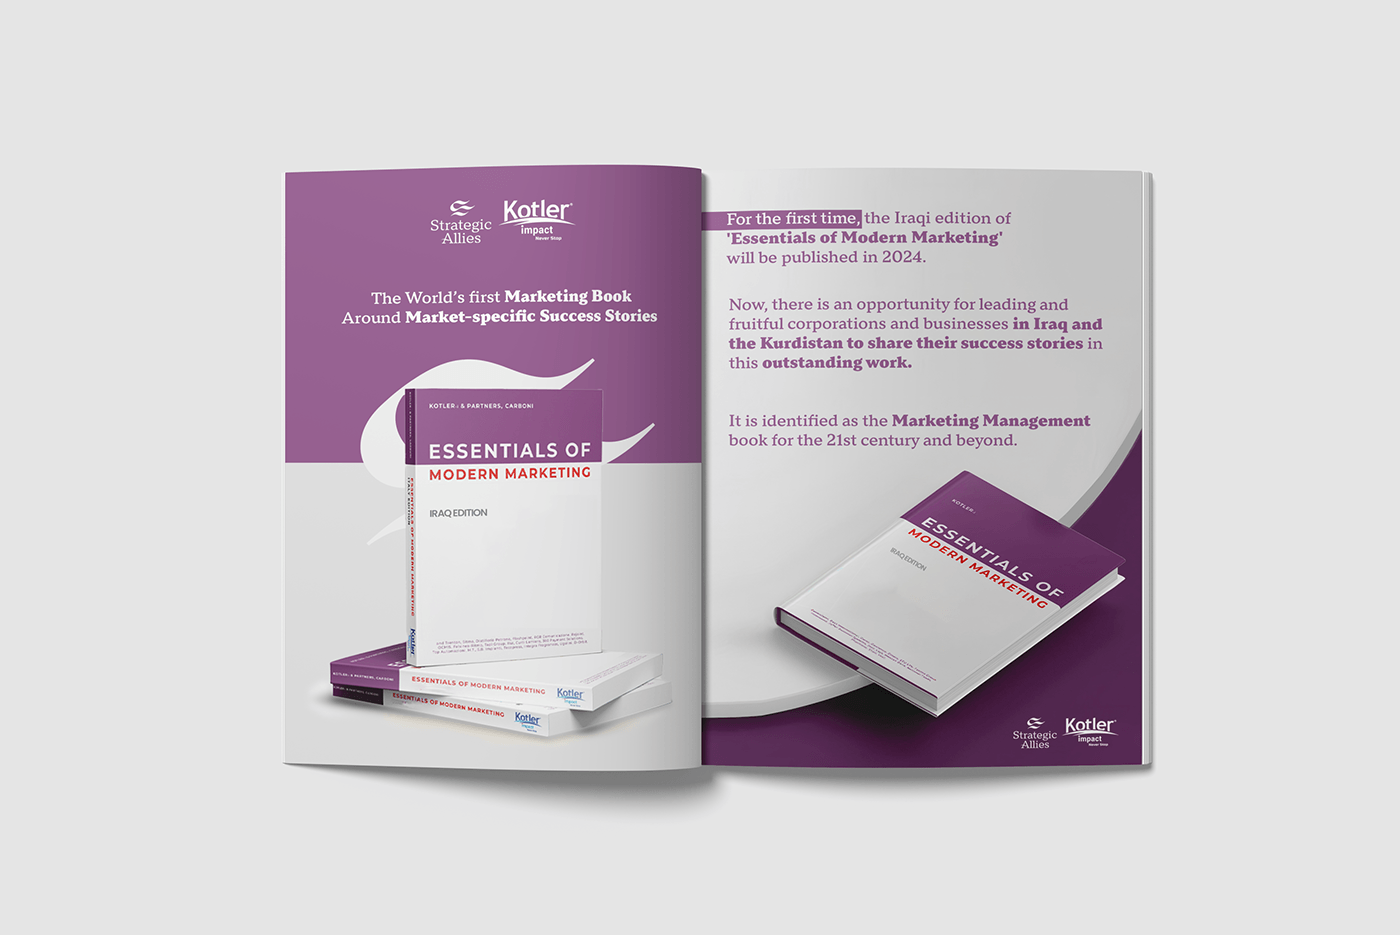 design marketing   Advertising  brand identity branding  book design books strategic design ModernMarketing philipkotler